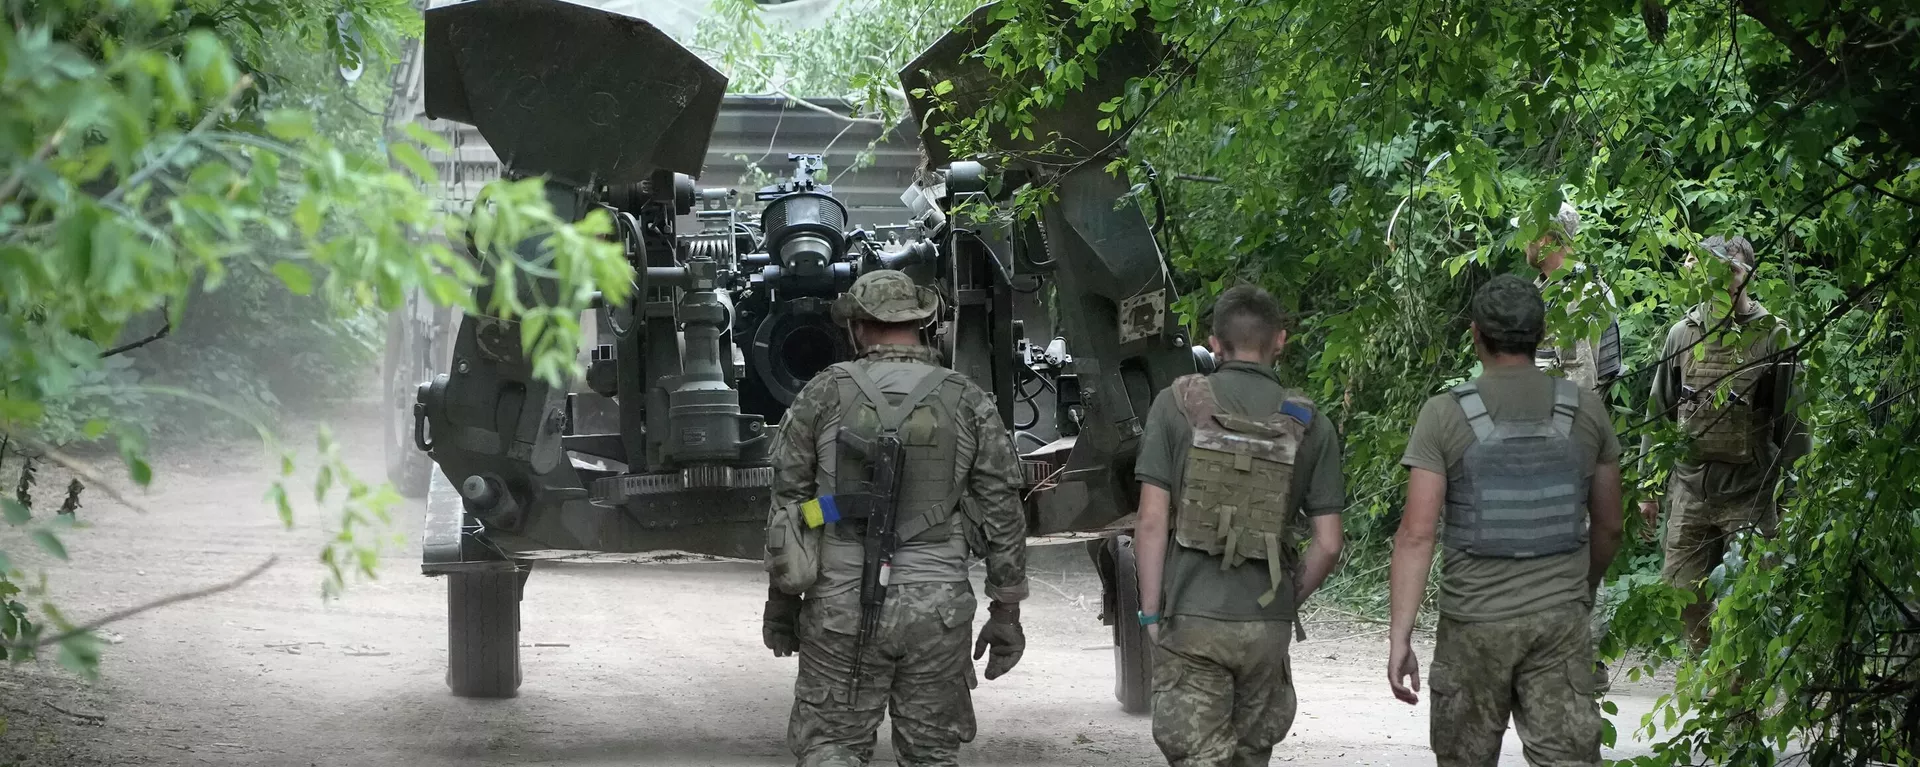 Ukraińscy żołnierze ustawiają dostarczoną przez USA haubicę M777 na pozycji do ostrzału rosyjskich pozycji we wschodnim Donbasie na Ukrainie Sobota, 18 czerwca 2022 r. - Sputnik International, 1920, 16.03.2023